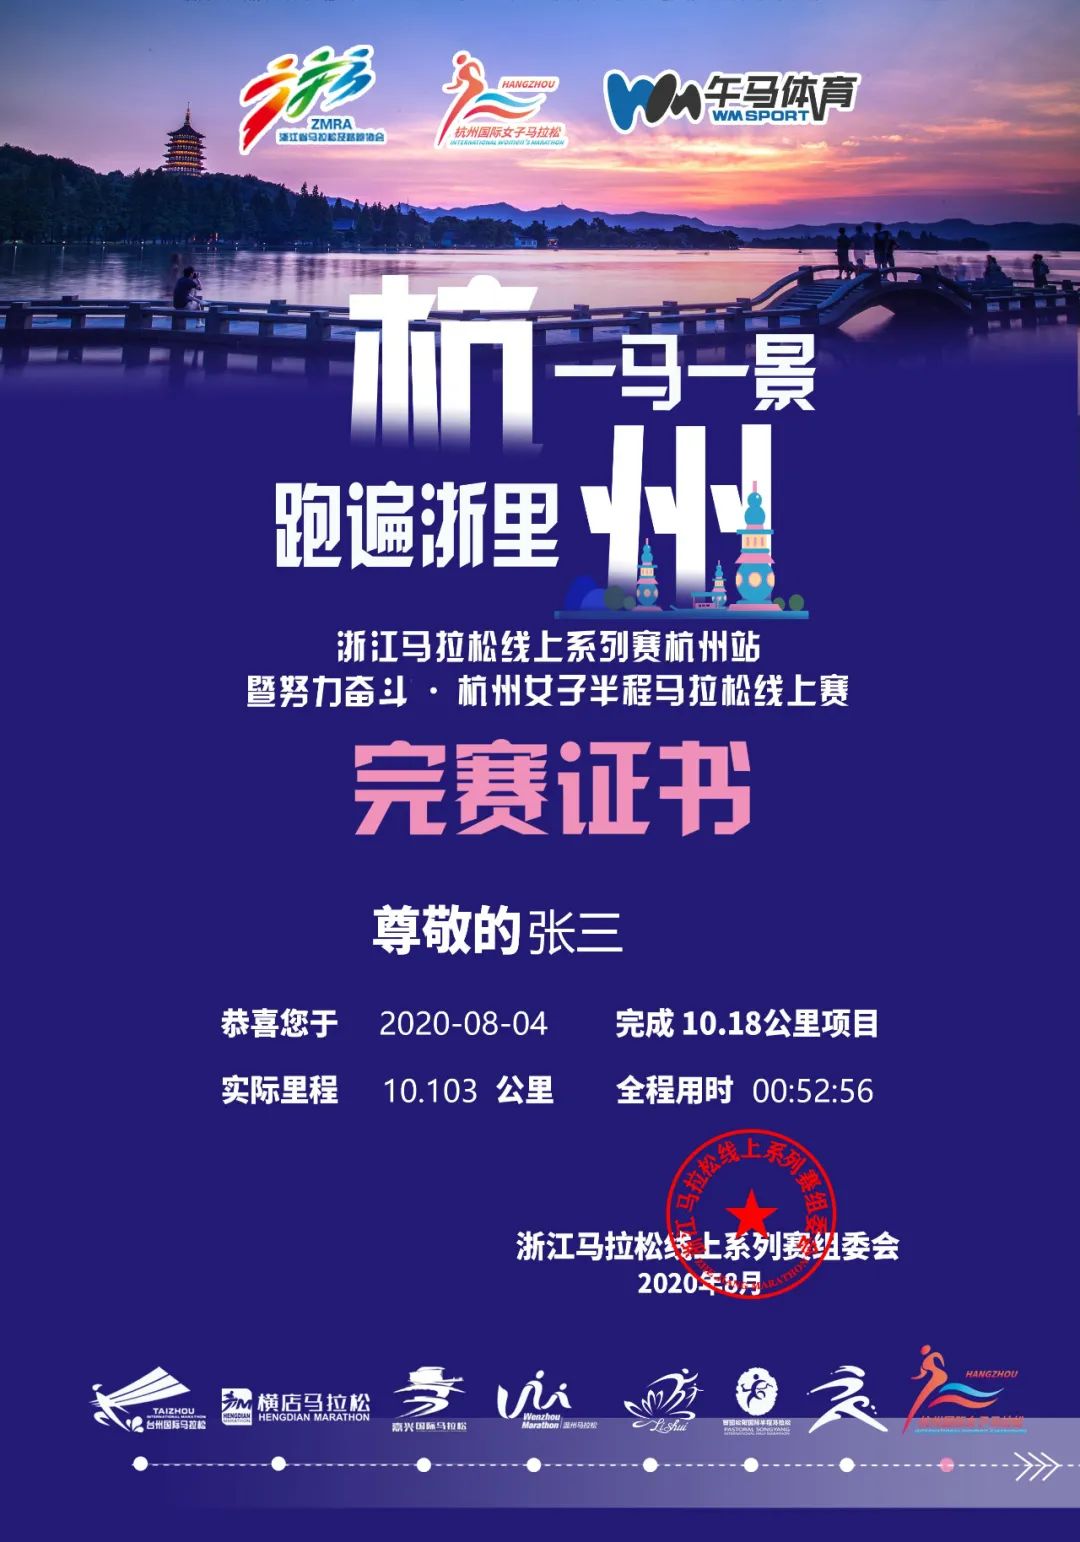 杭州马拉松志愿者标志图片